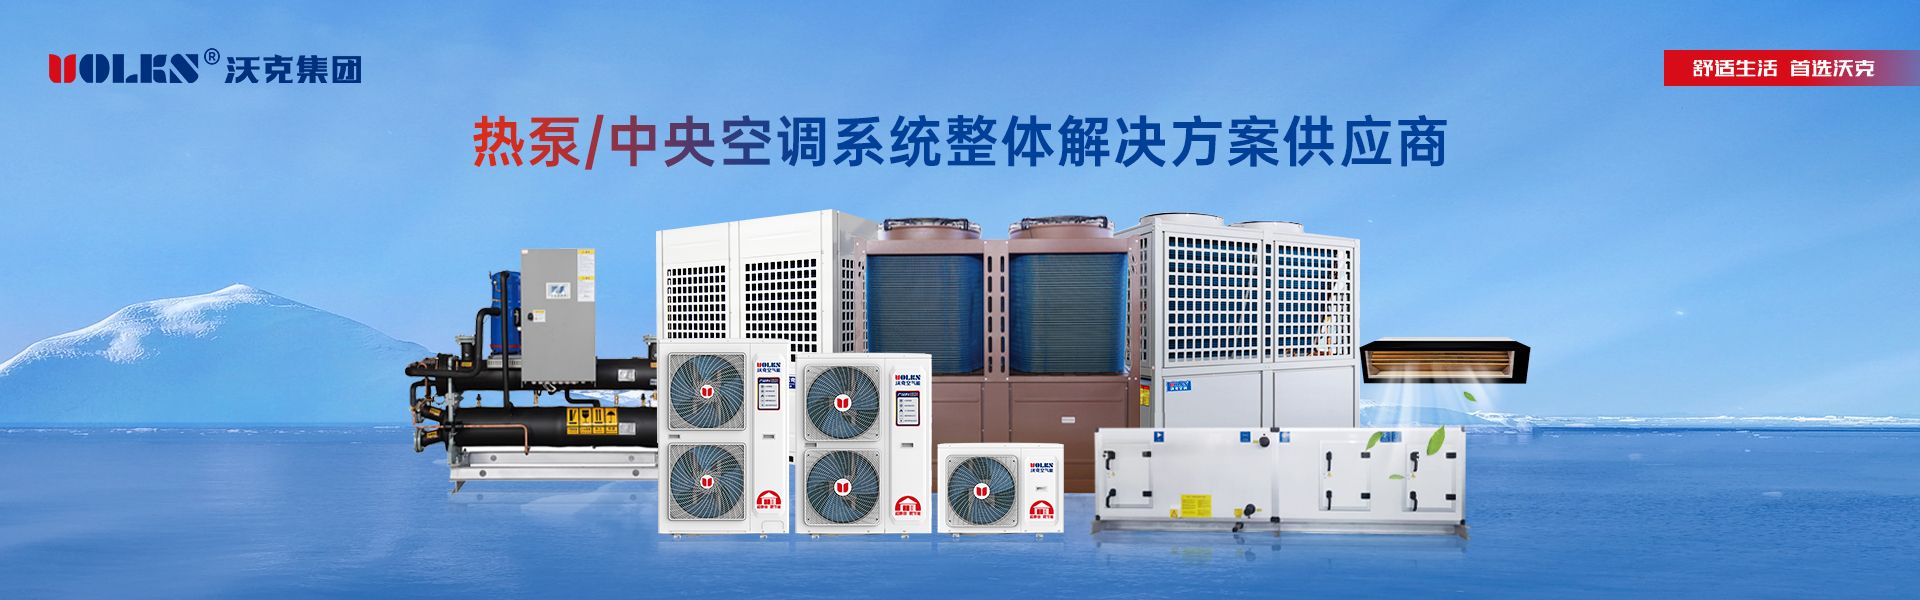 热泵/中央空调全品类超级生产基地.jpg